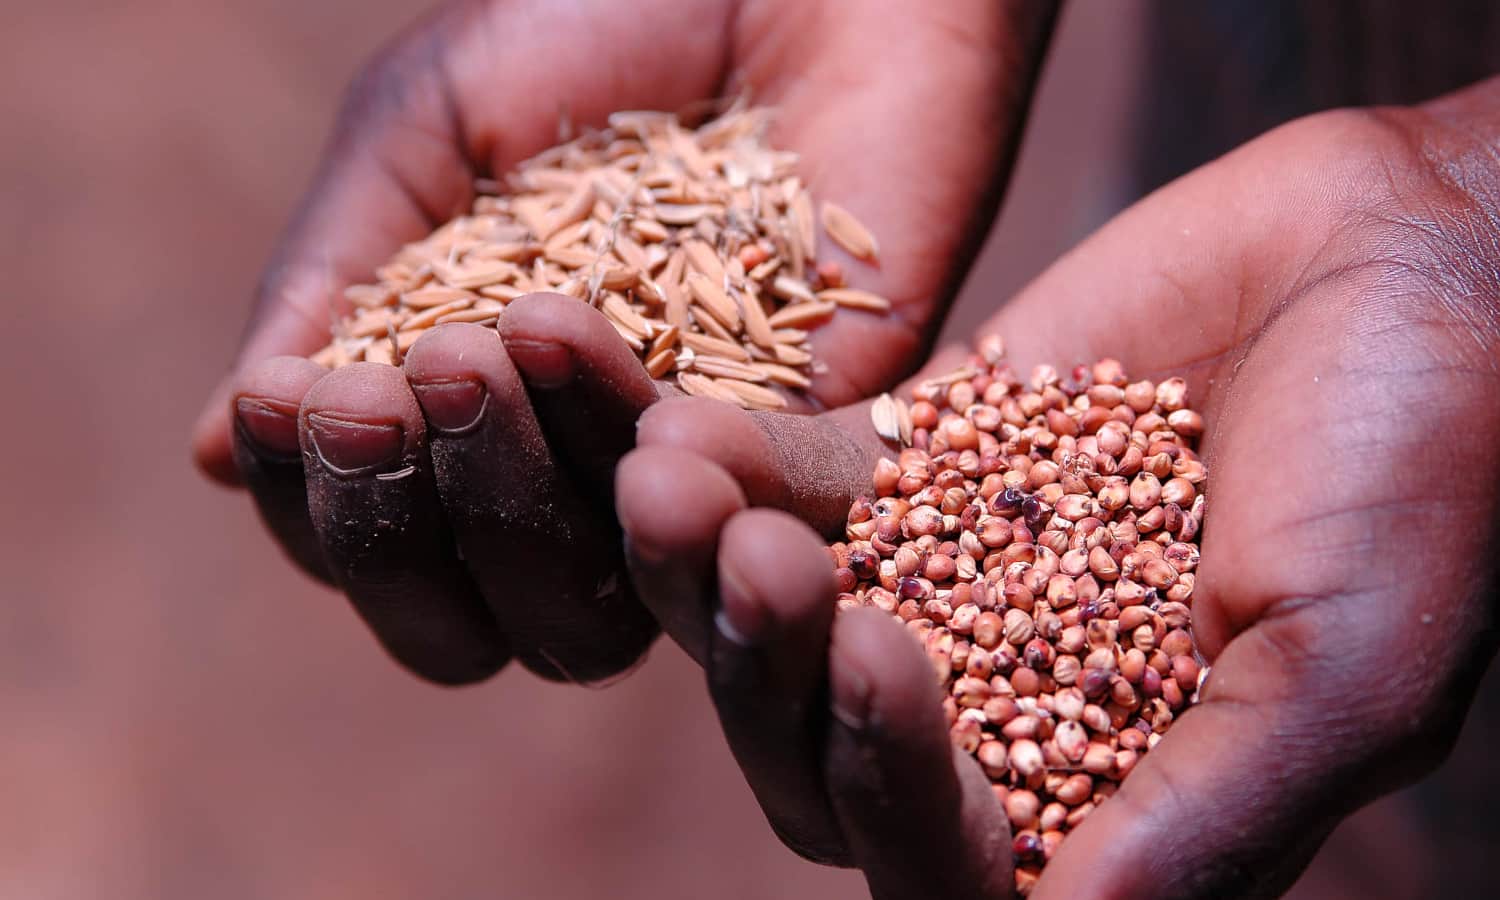 耐旱作物提供营养和对农民的收入可能会给该地区带来更多的粮食安全。摩西Siambi博士从国际半干旱热带研究所解释了依赖单一、水密集型作物干旱时期可能会有风险。